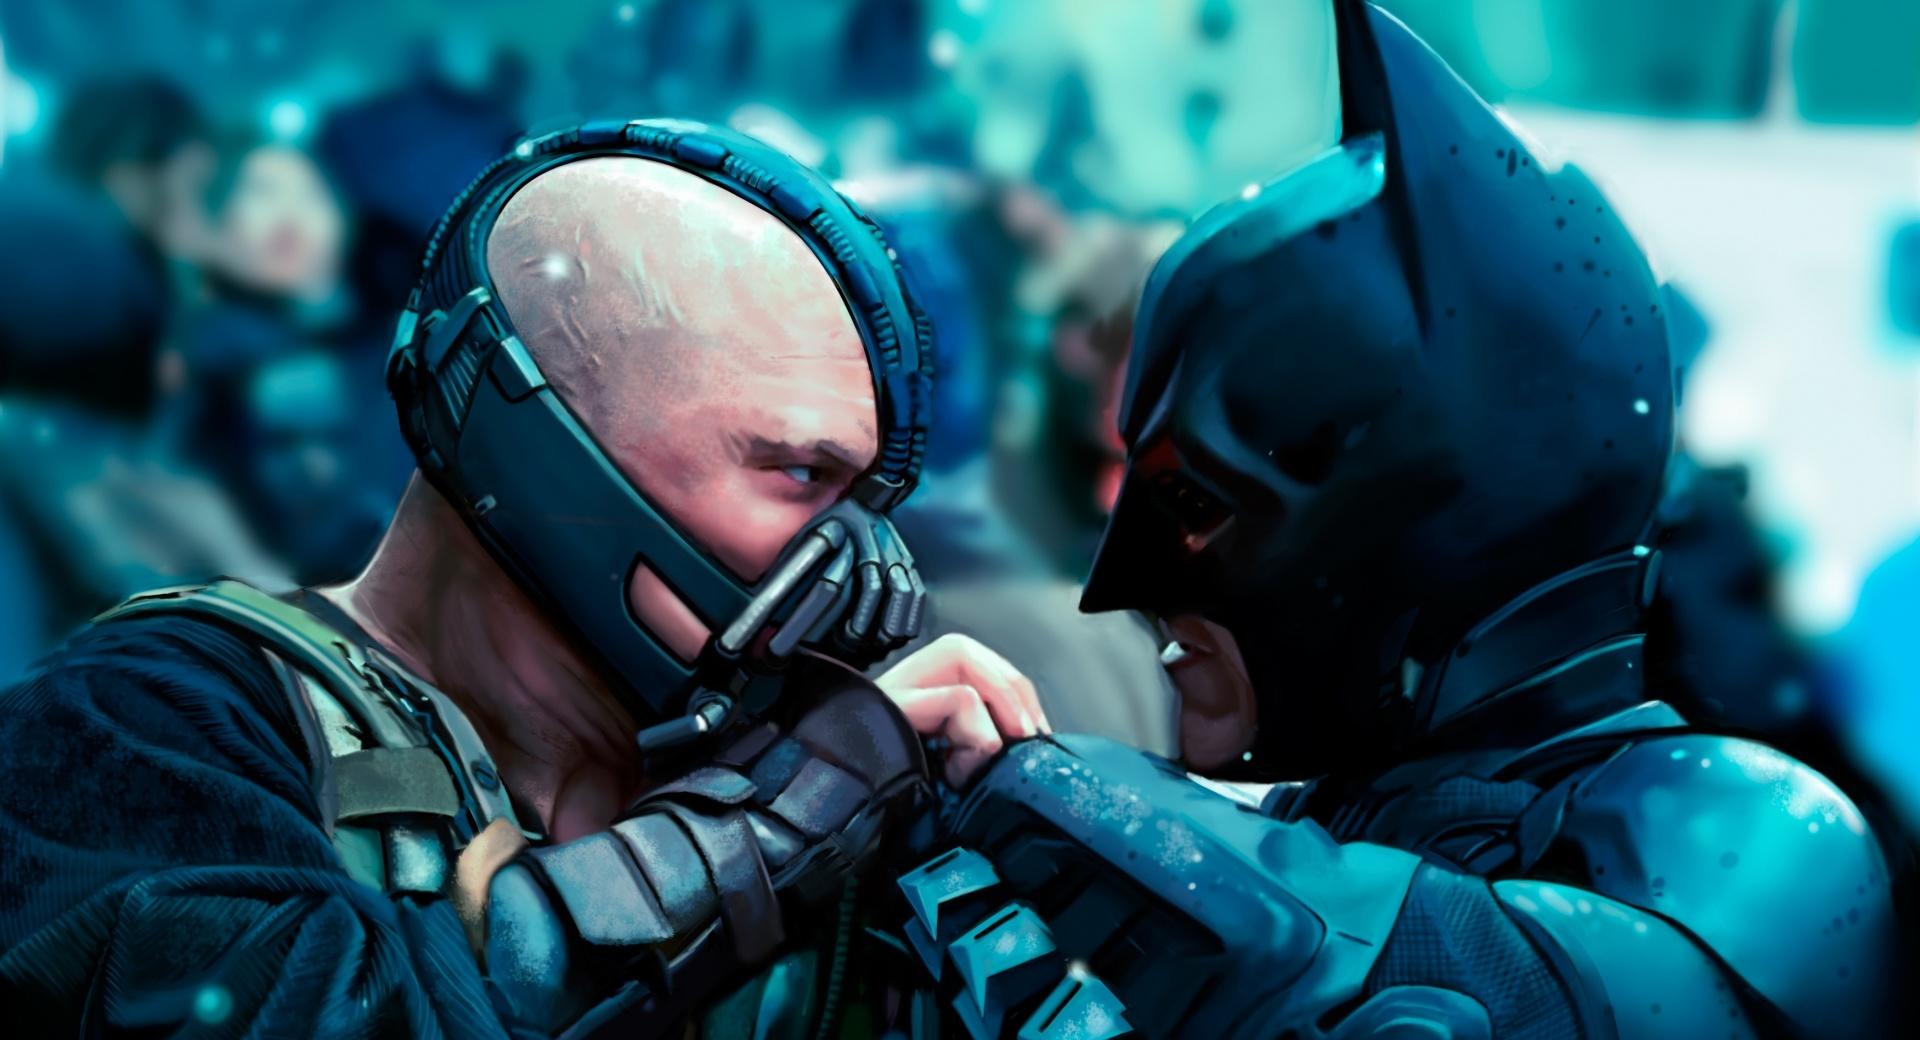 Batman vs Bane at 1280 x 960 size wallpapers HD quality